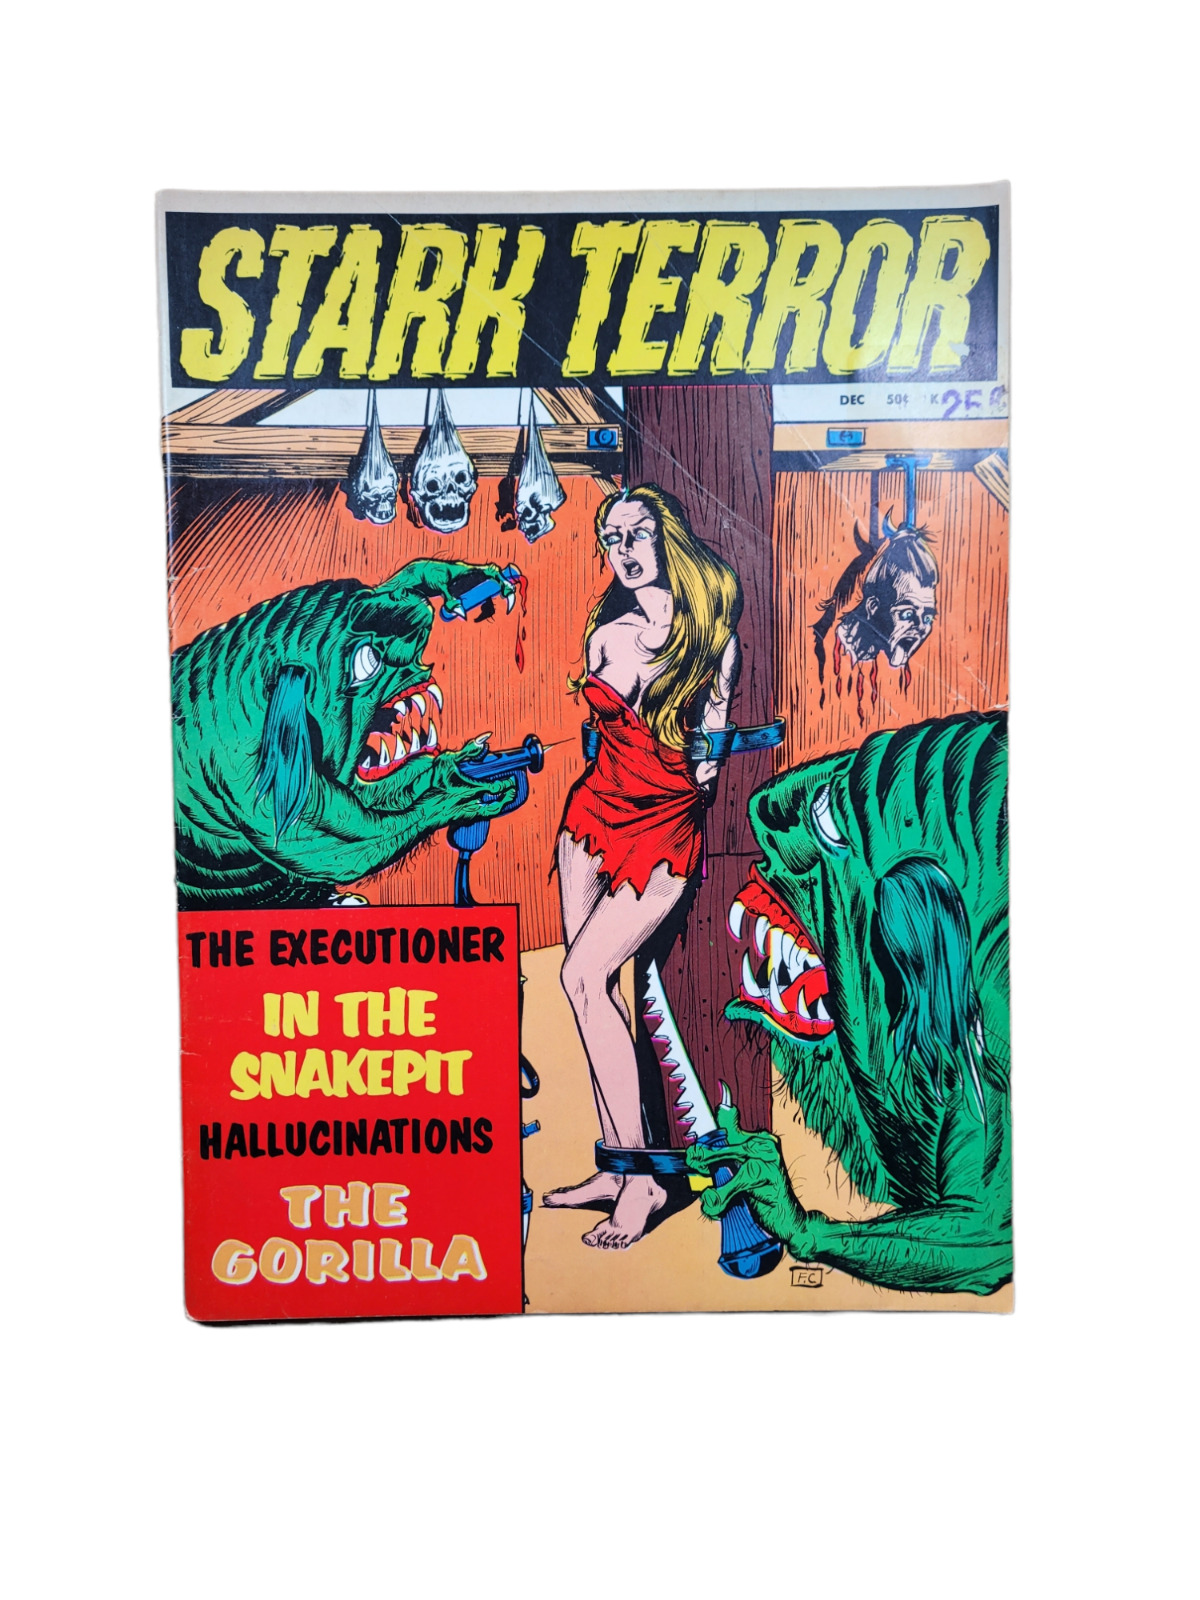 Stark Terror #1 1970 Horror | Monster | Sci FI Comic Book/Magazine VG+ VINTAGE